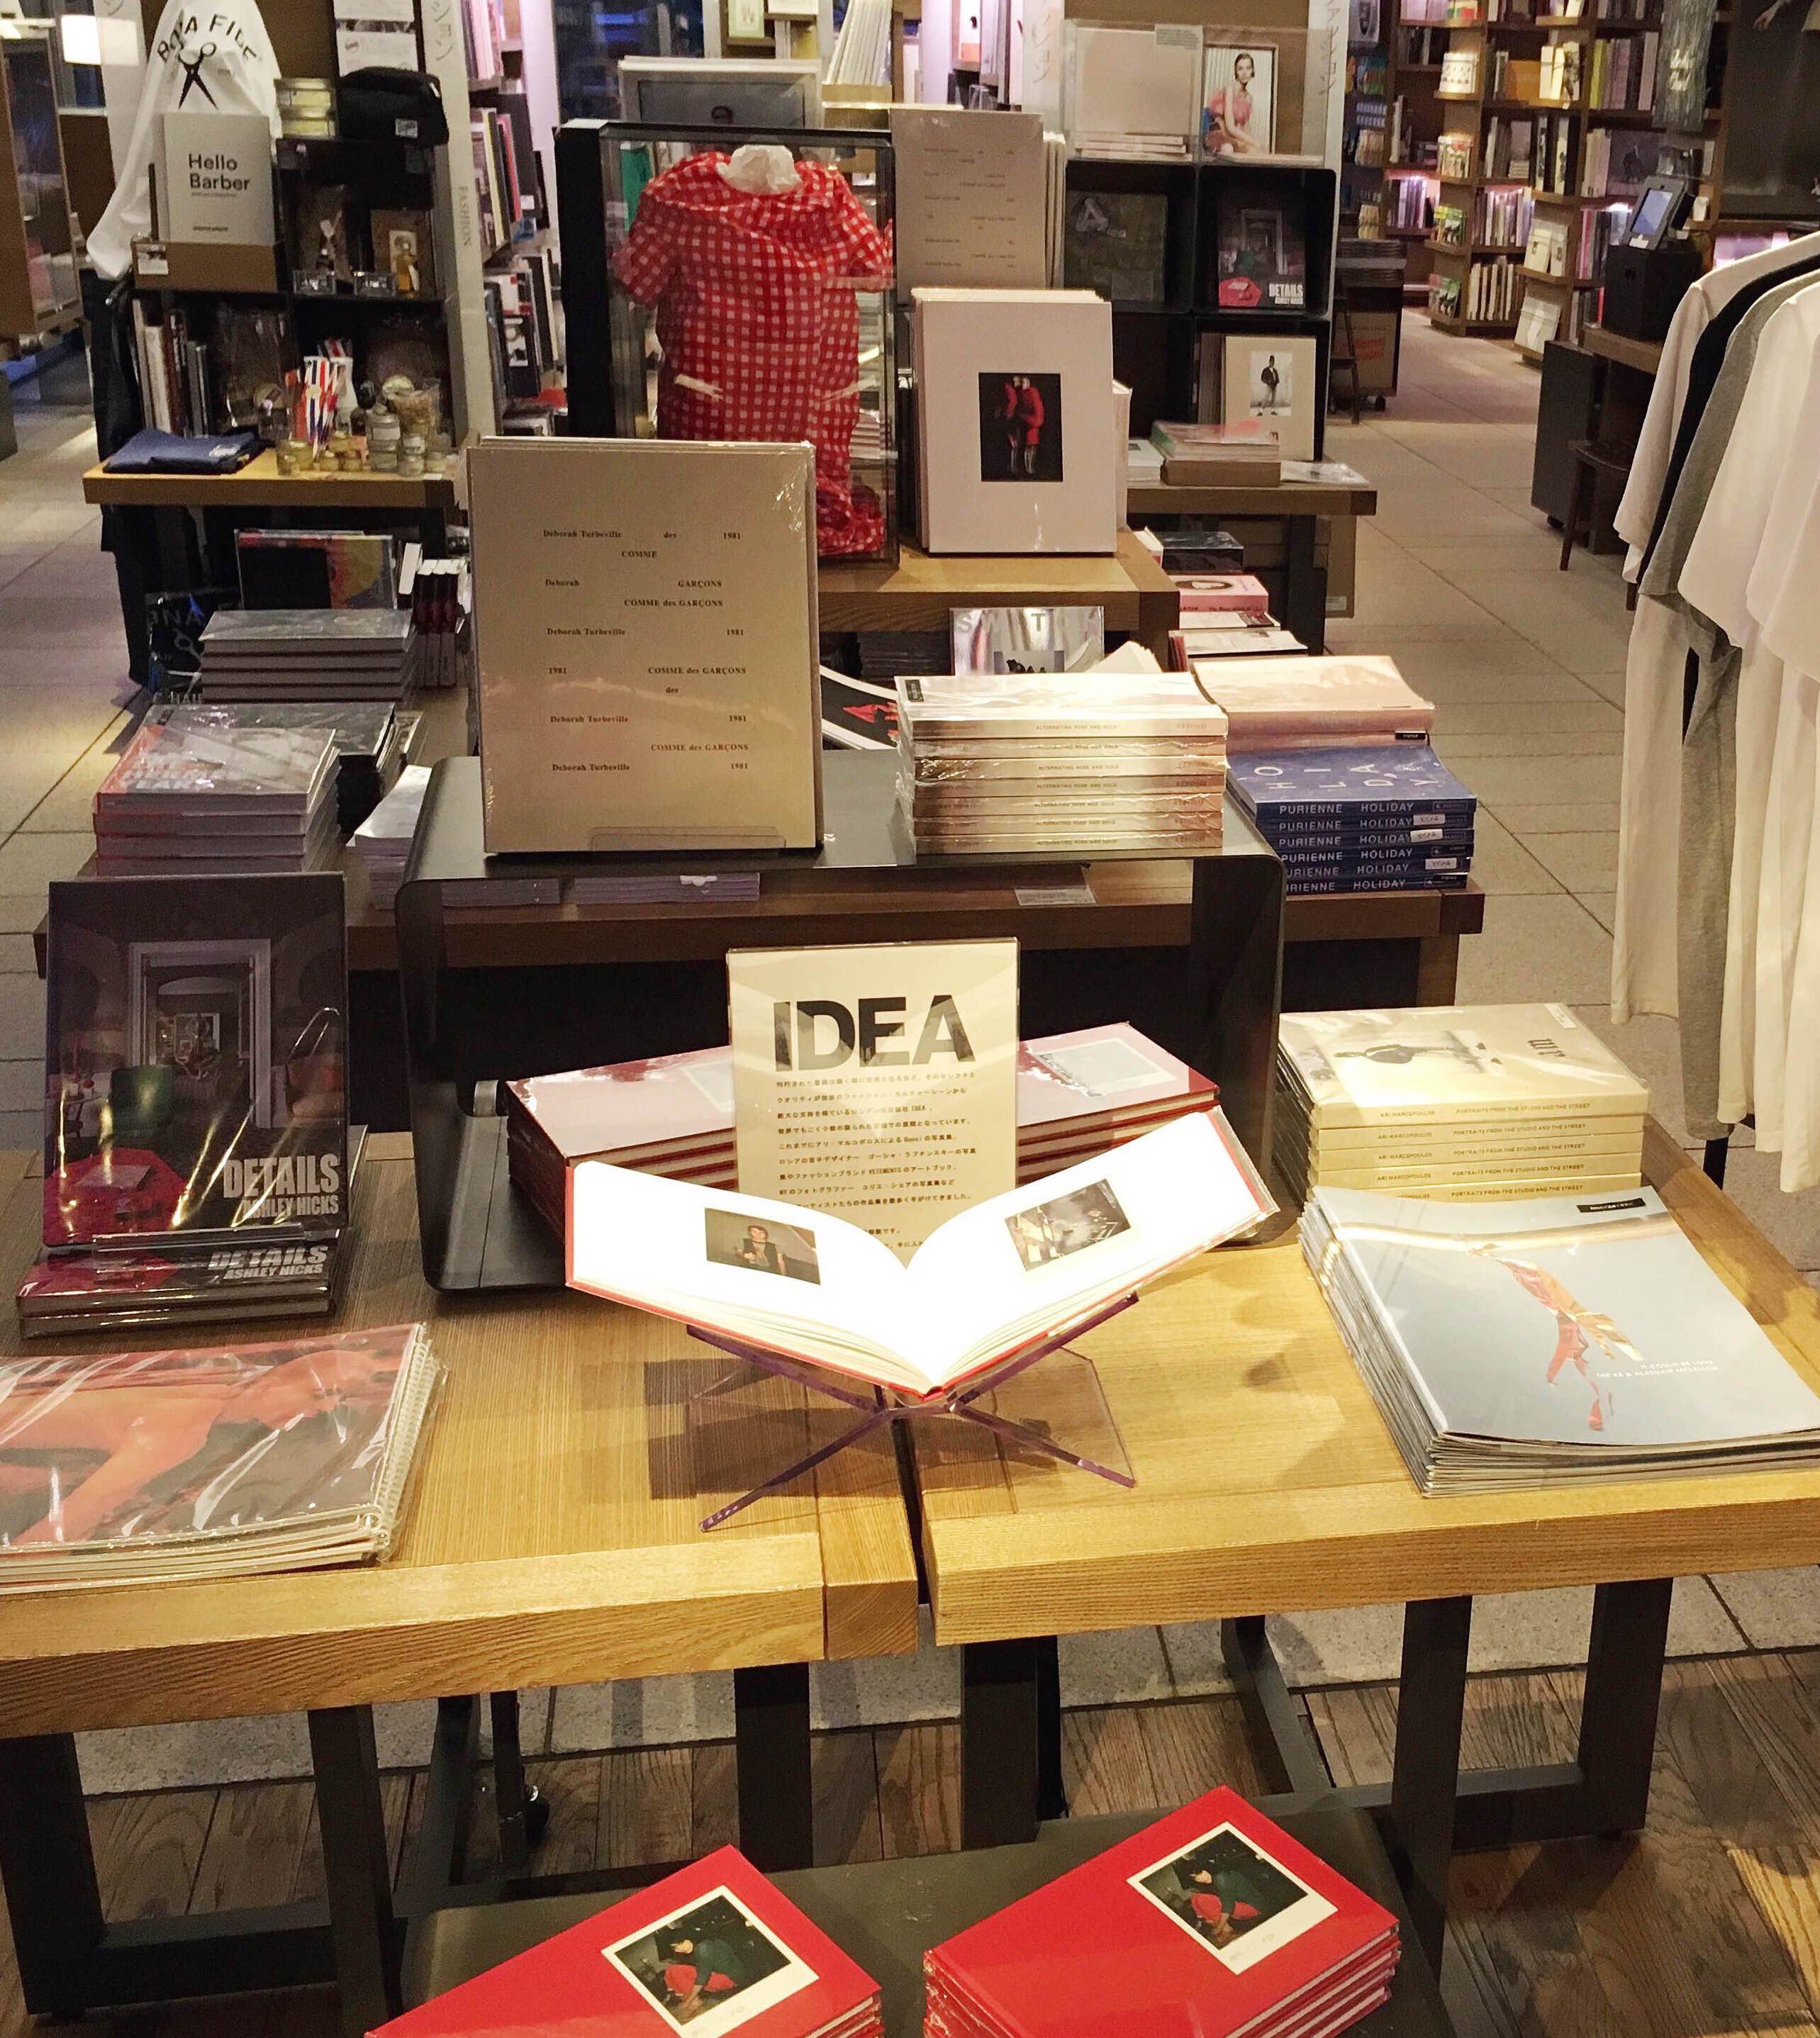 グッチ、ヴェトモン、ゴシャの写真集を出版してきたロンドン発「IDEA」のフェアが代官山 蔦屋書店にて開催。6月30日(金)まで